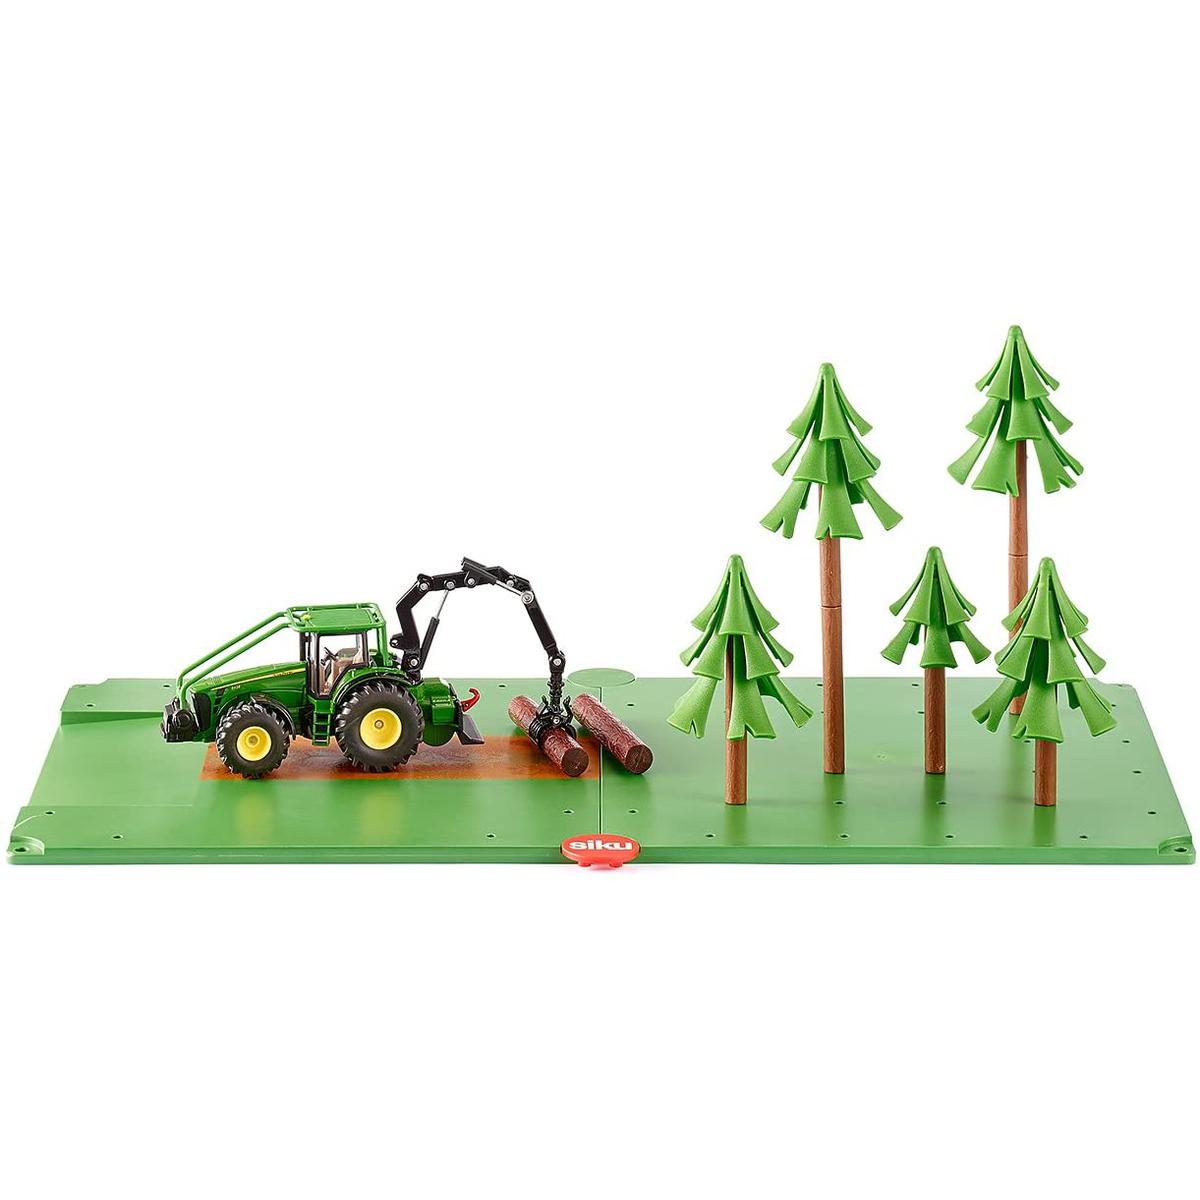 Siku 5605 FORESTRY SET Metal Plastik Oyuncak Orman Seti (Traktör + Ağaçlar) resmi